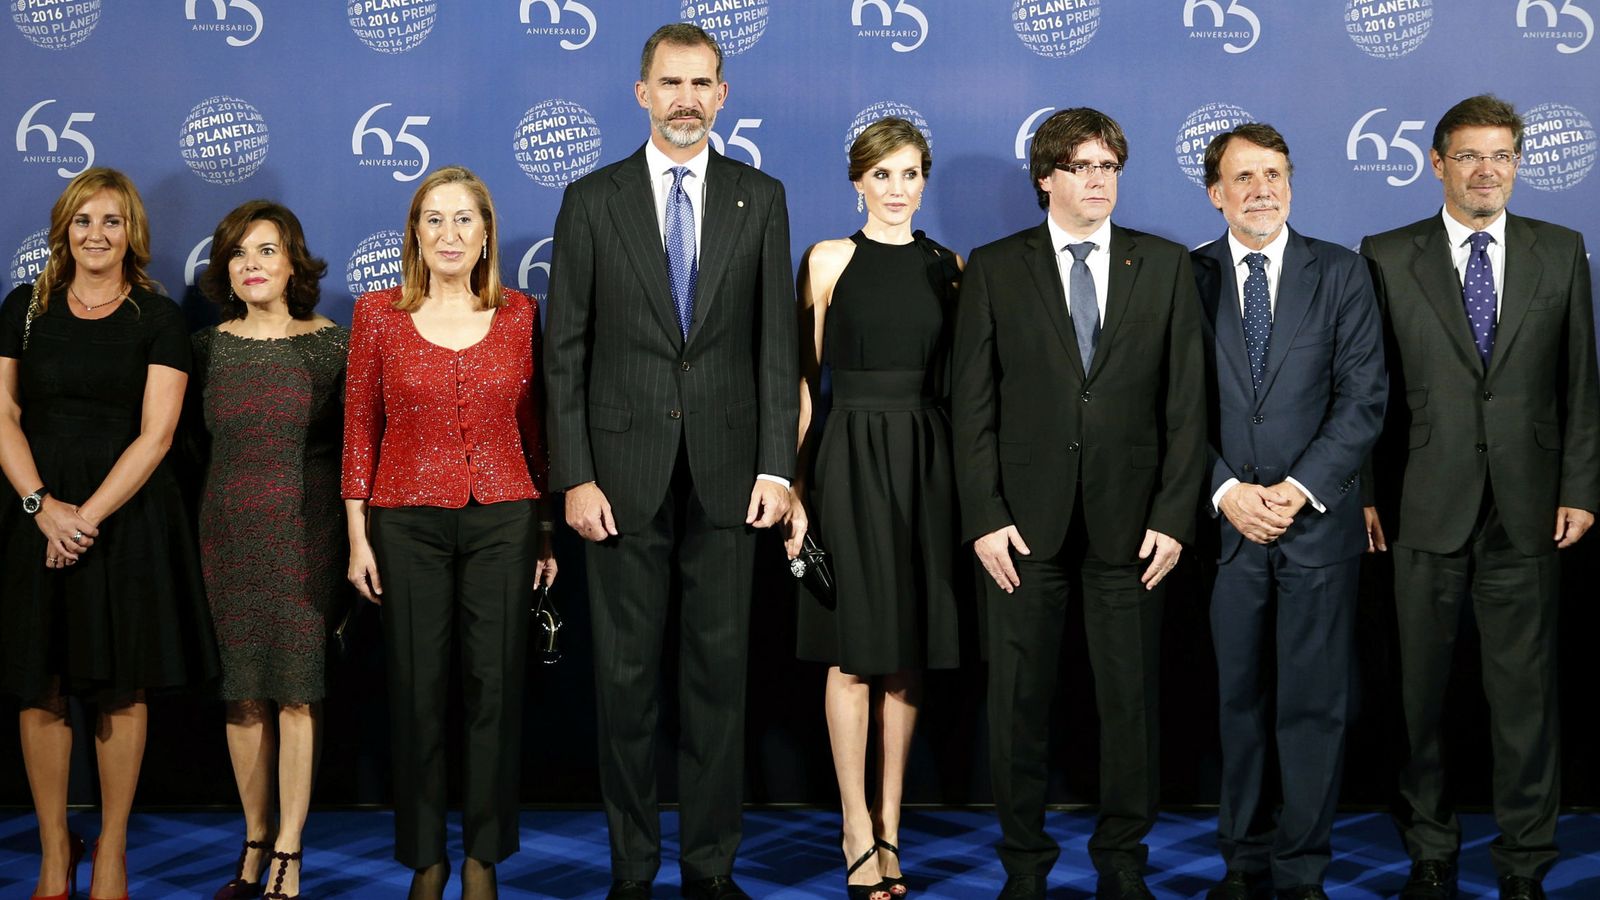 Foto: Los reyes Felipe y Letizia, junto a Carles Puigdemont, Ana Pastor, Soraya Saenz de Santamaría,, Josep Creuheras y Rafael Catalá, en la cena del Premio Planeta. (EFE)